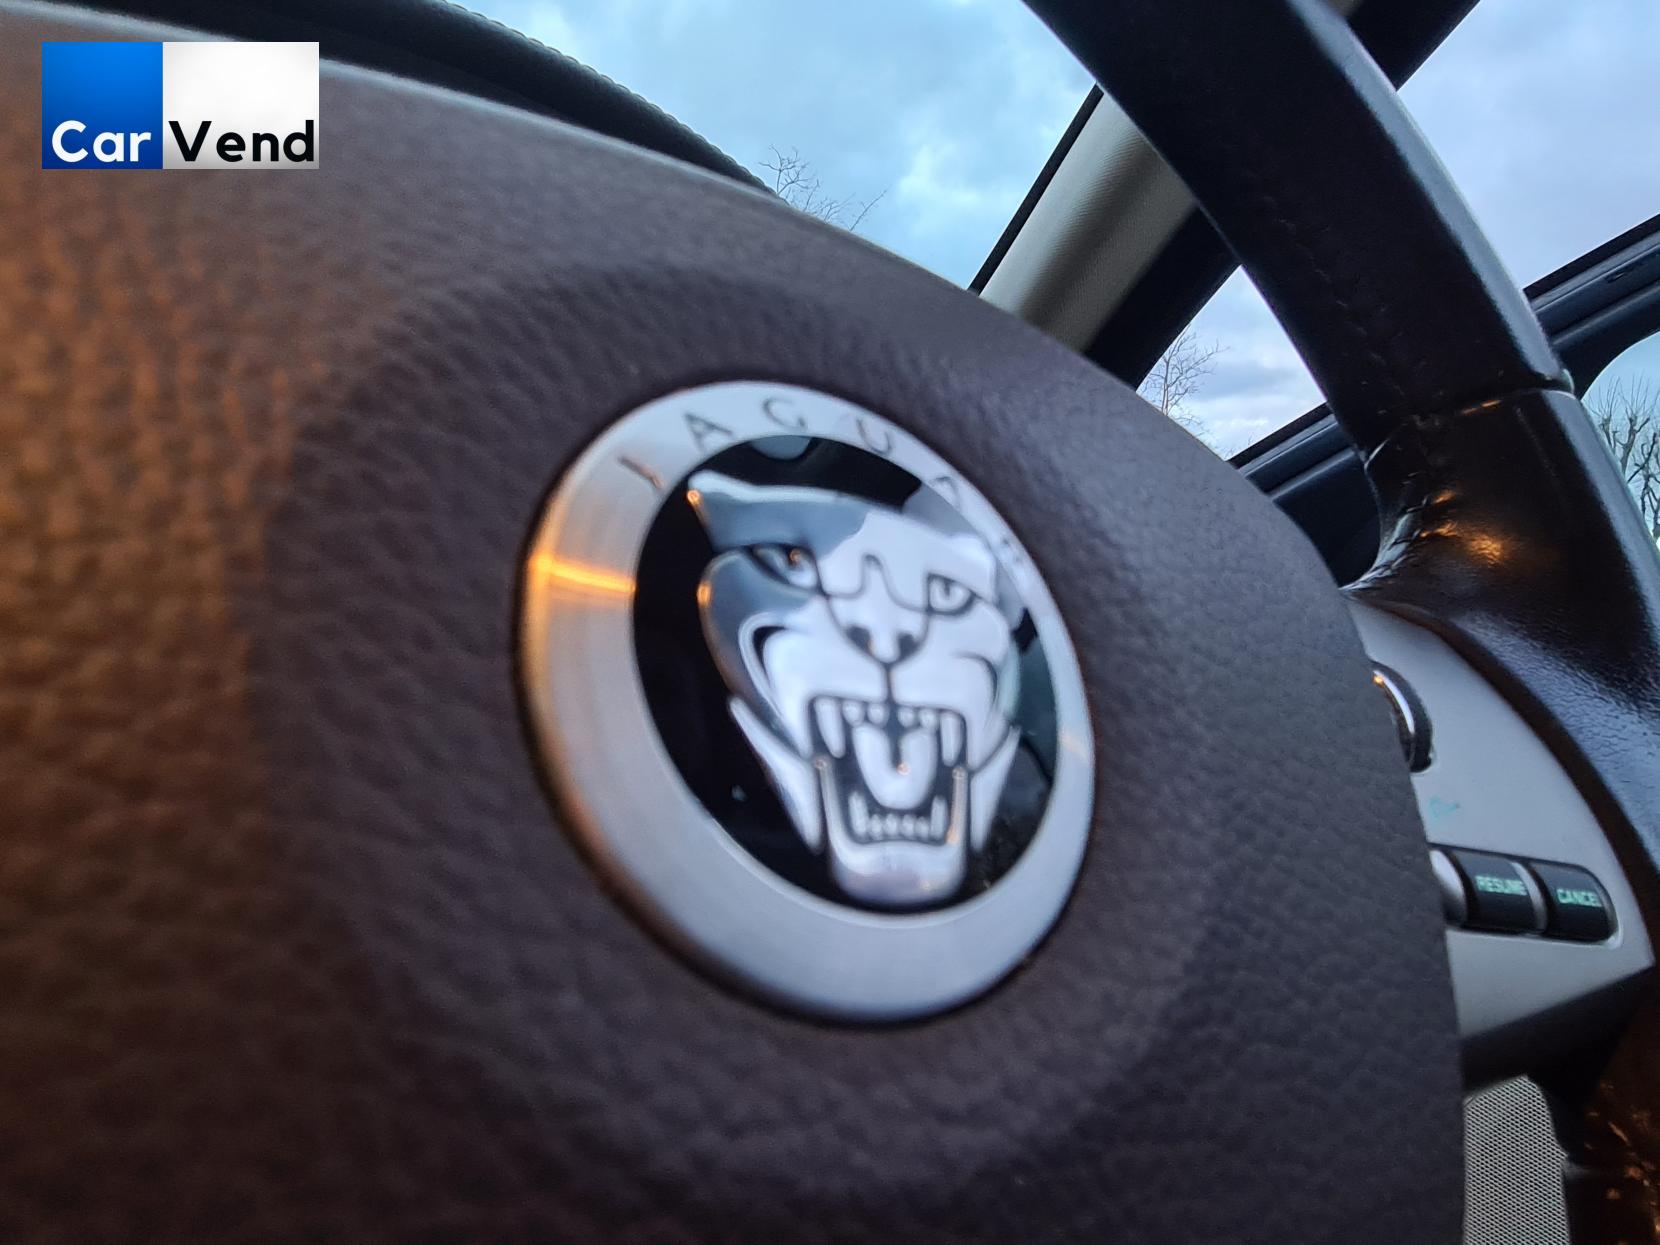 Jaguar XF 3.0d V6 Luxury Saloon 4dr Diesel Auto Euro 5 (240 ps)